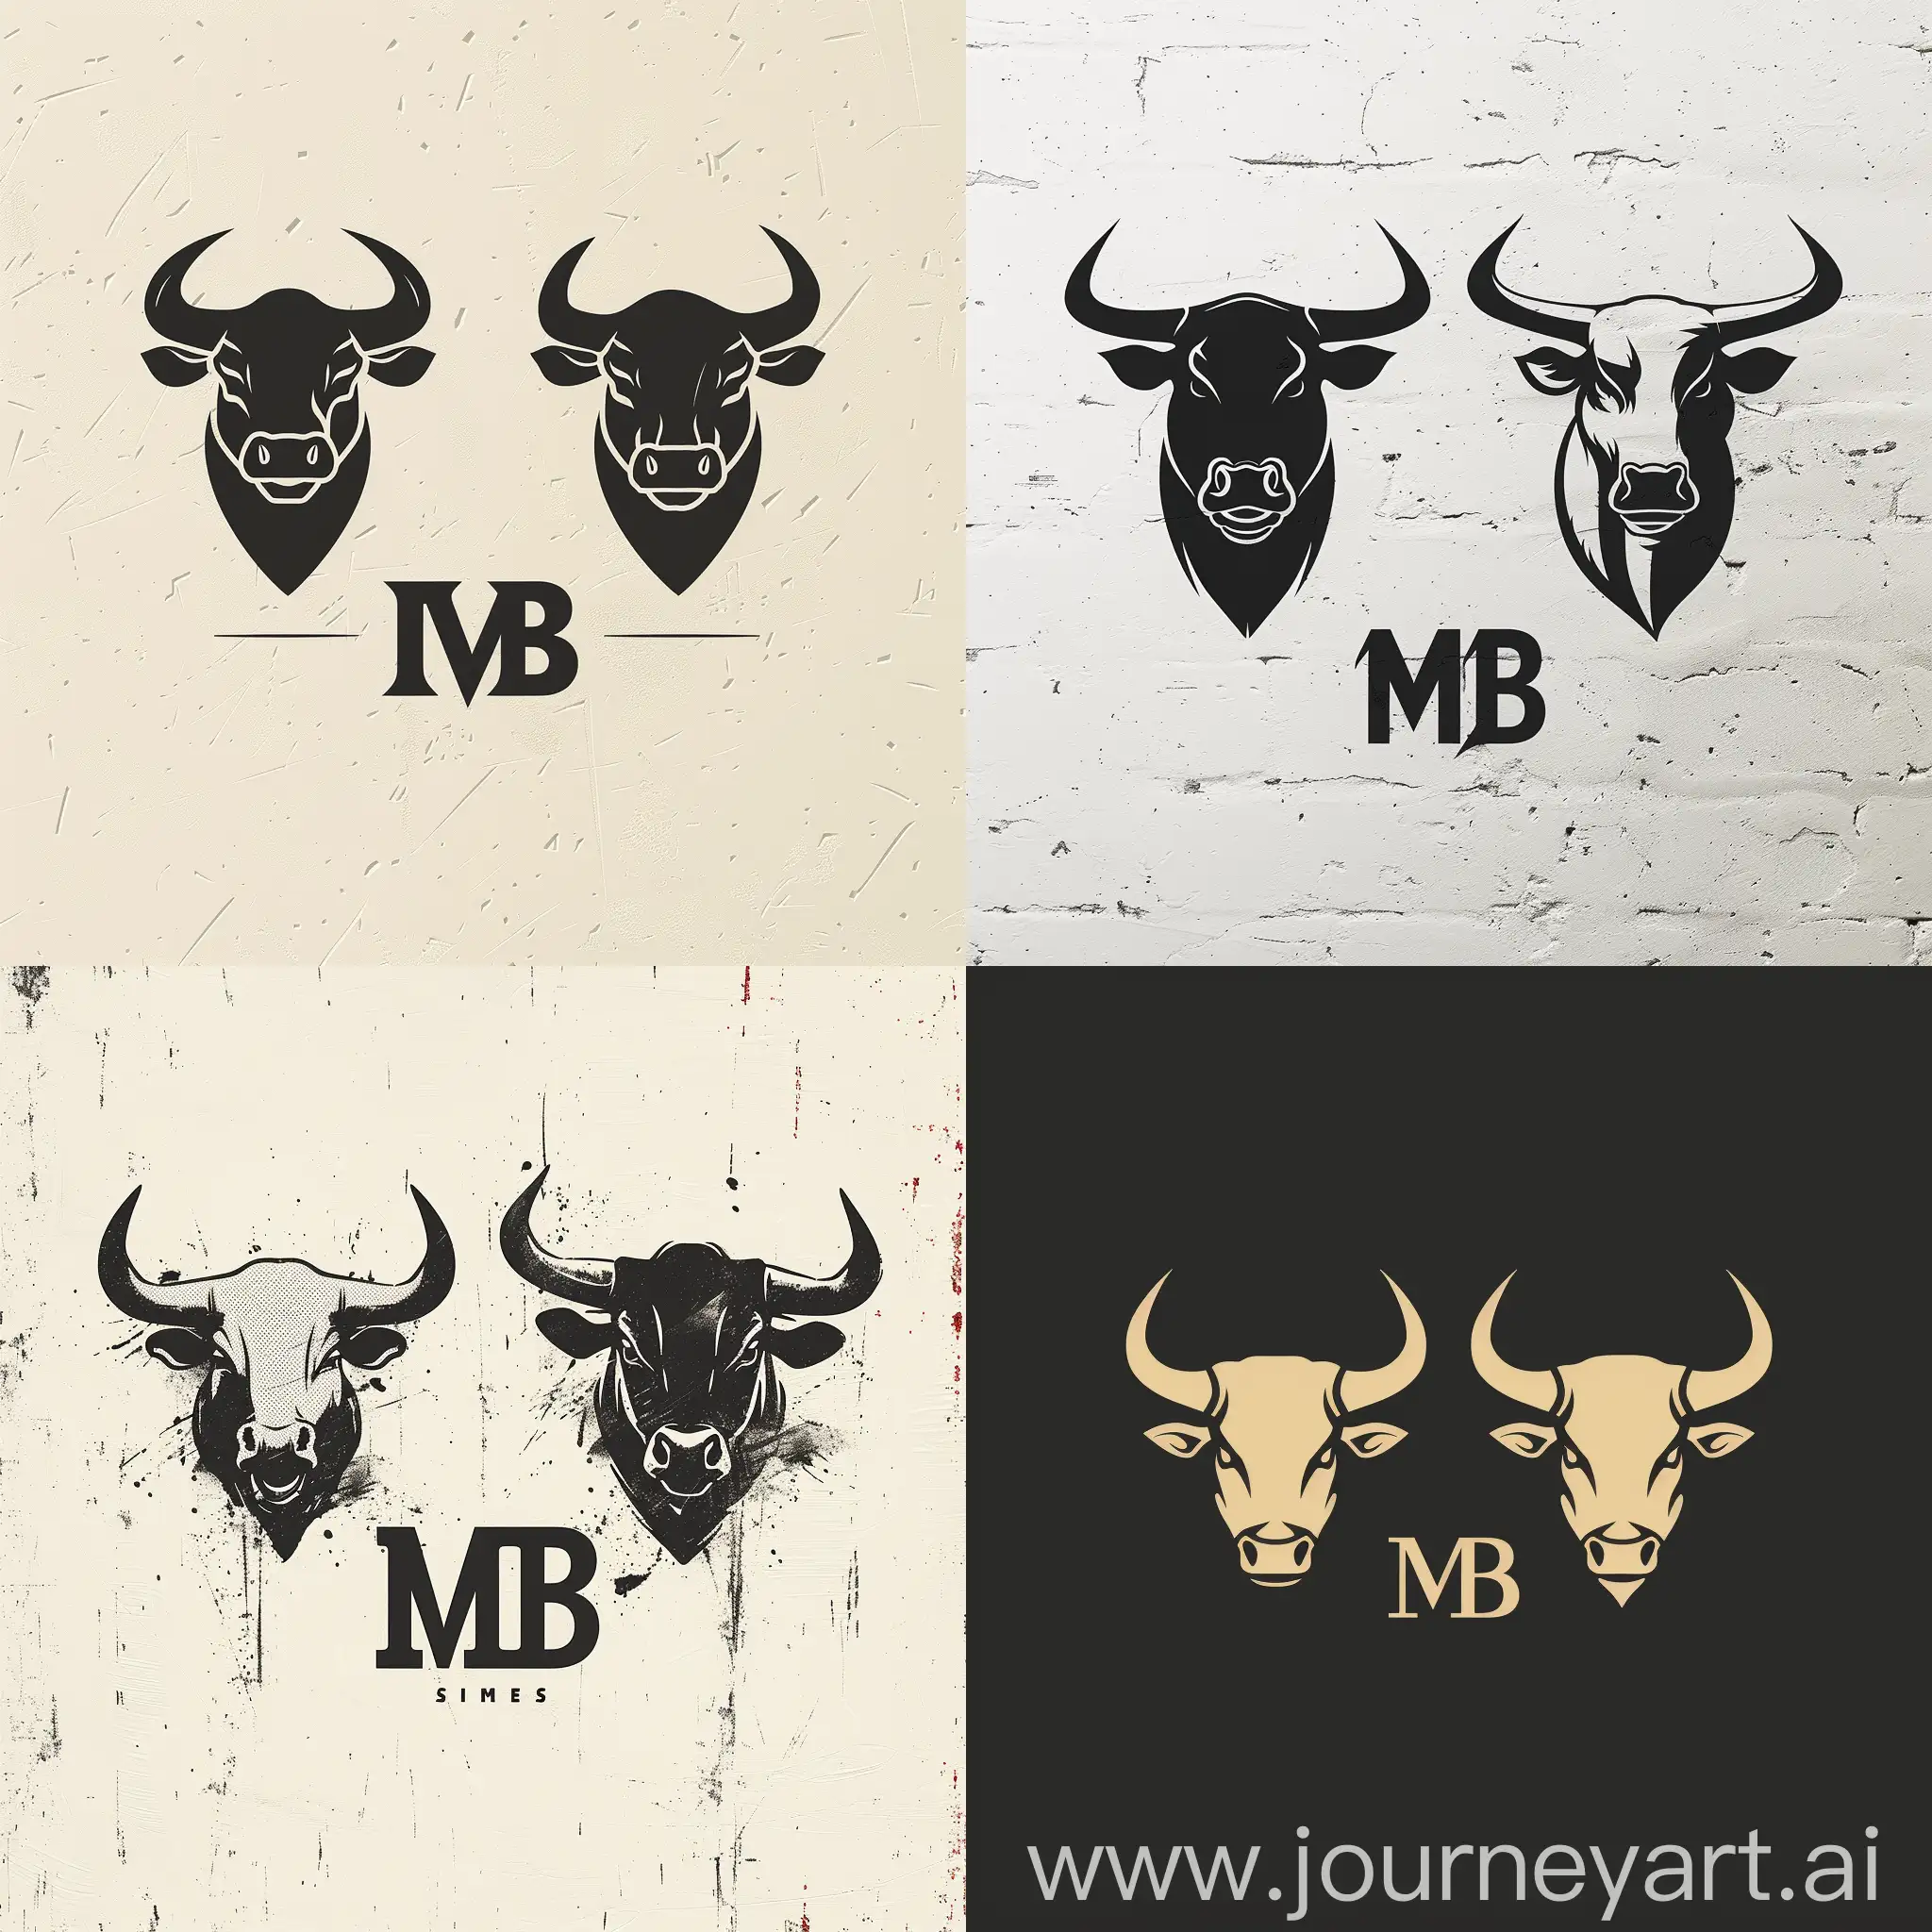 логотип "MB", двух абстрактных быков, первый бык изображен с открытым ртом выражающим агрессию, второй бык с закрытыми рогами выражающим стойкость и силу, --s 300